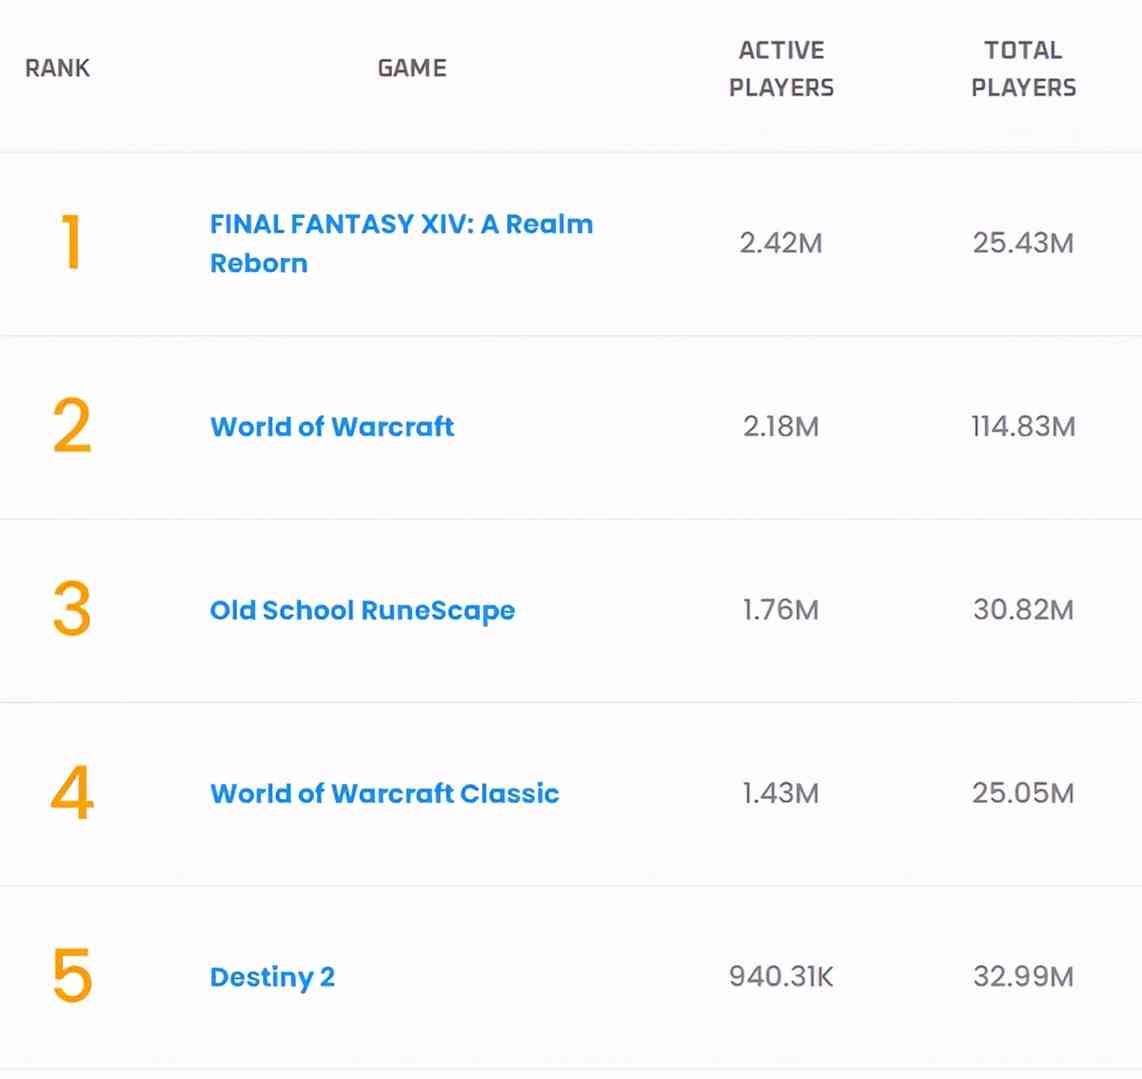 《最终幻想14》活跃用户达242万 超越老牌网游《WOW》